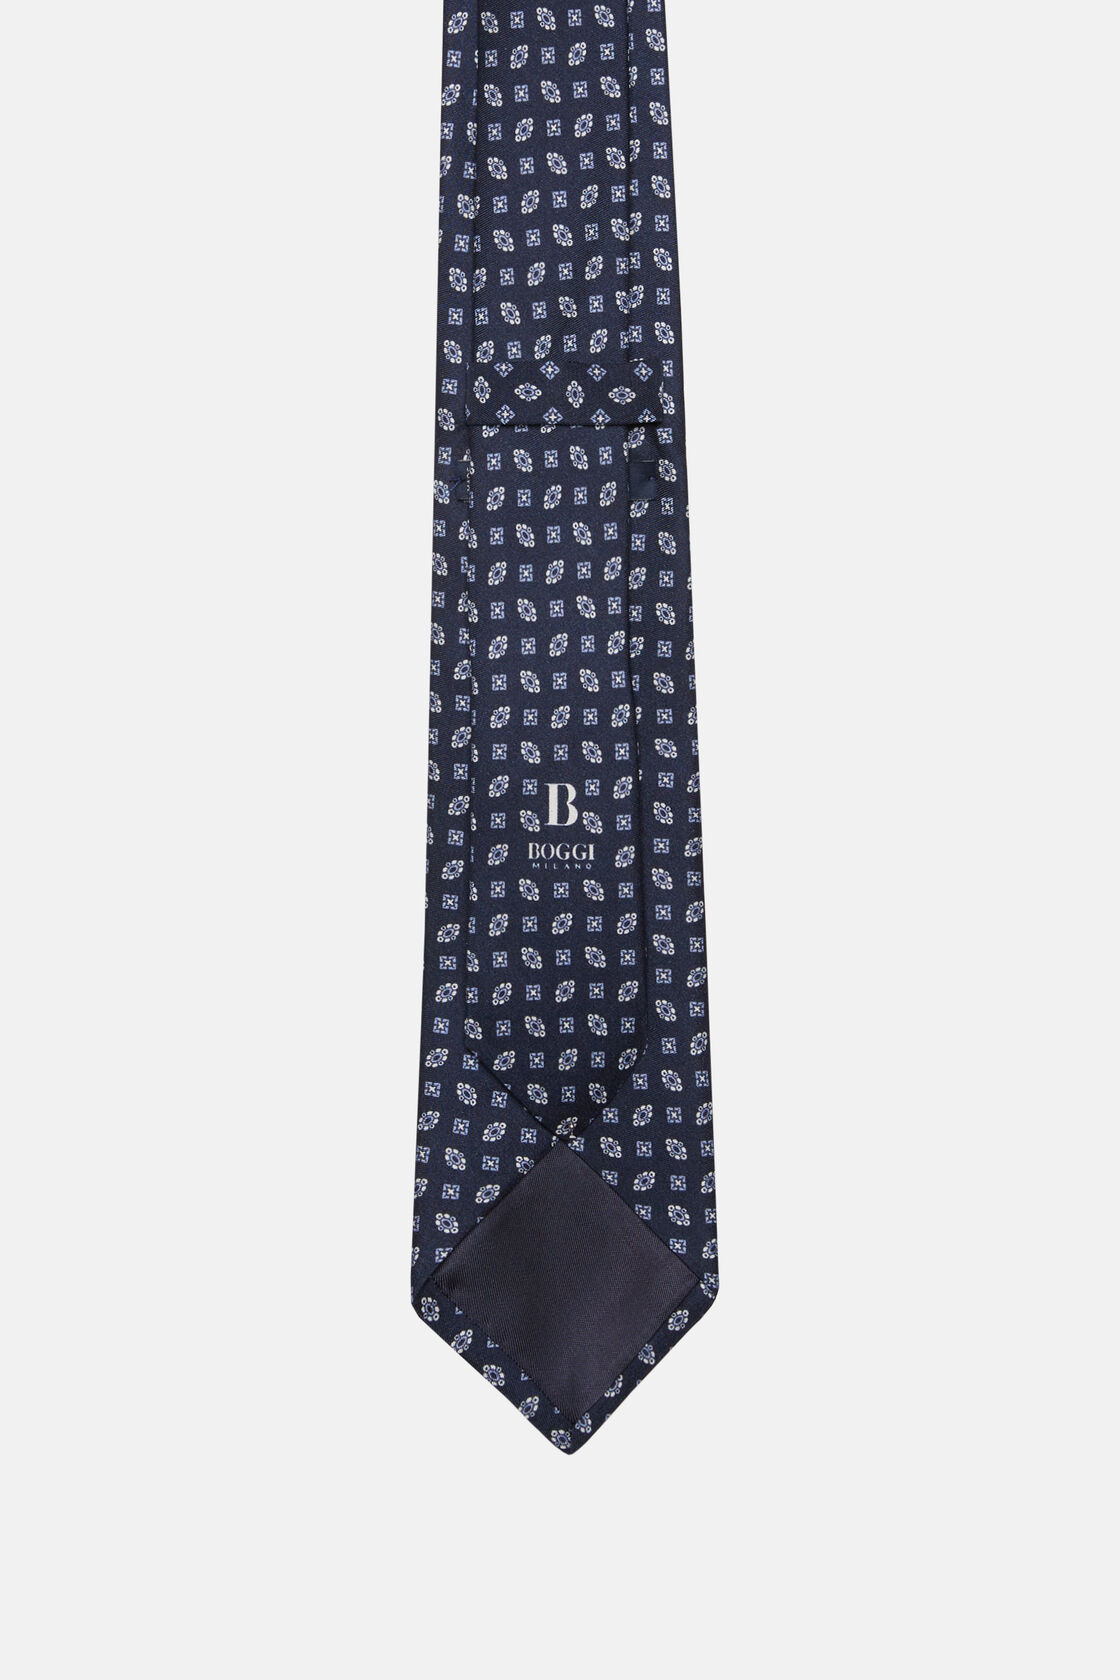 Zijden stropdas met geometrisch patroon, Navy blue, hi-res